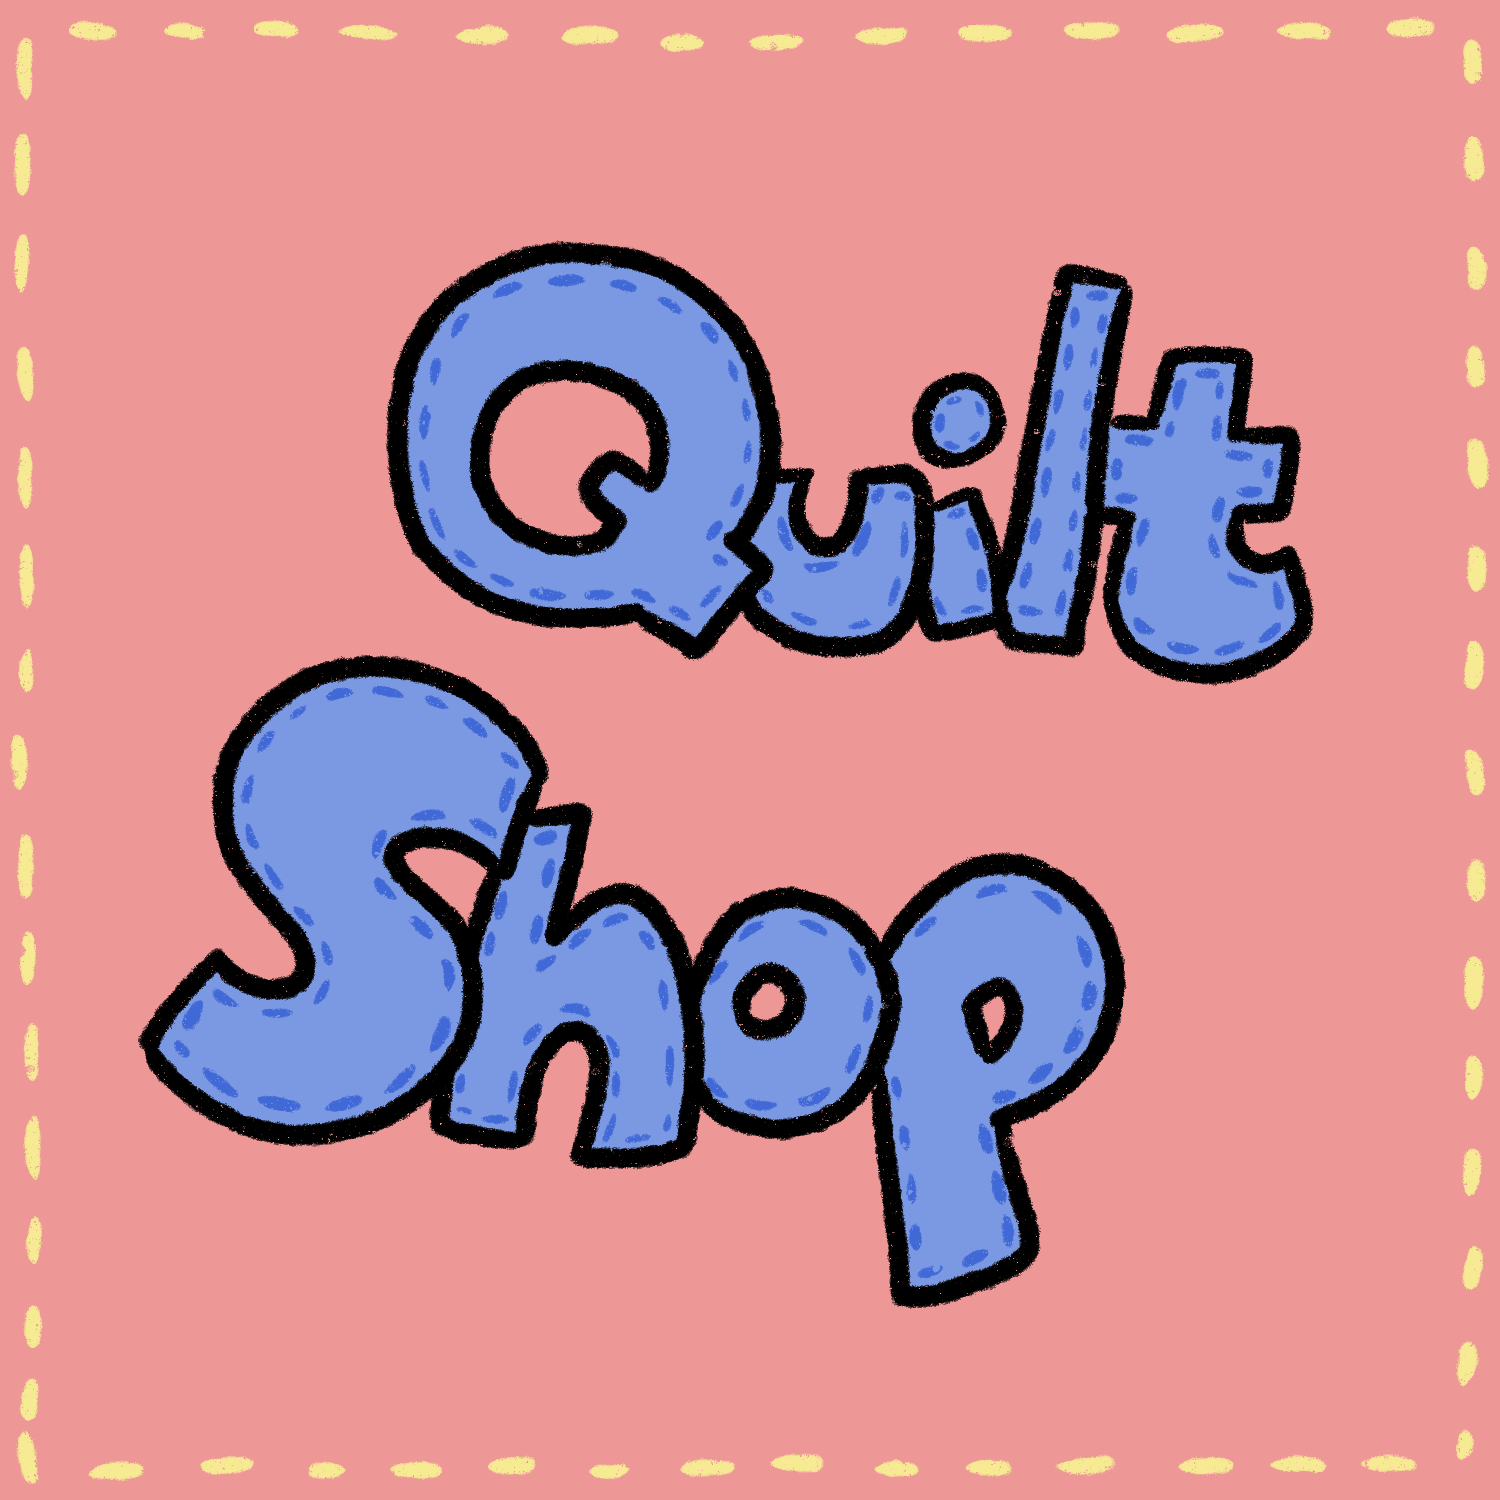 Quilt shop